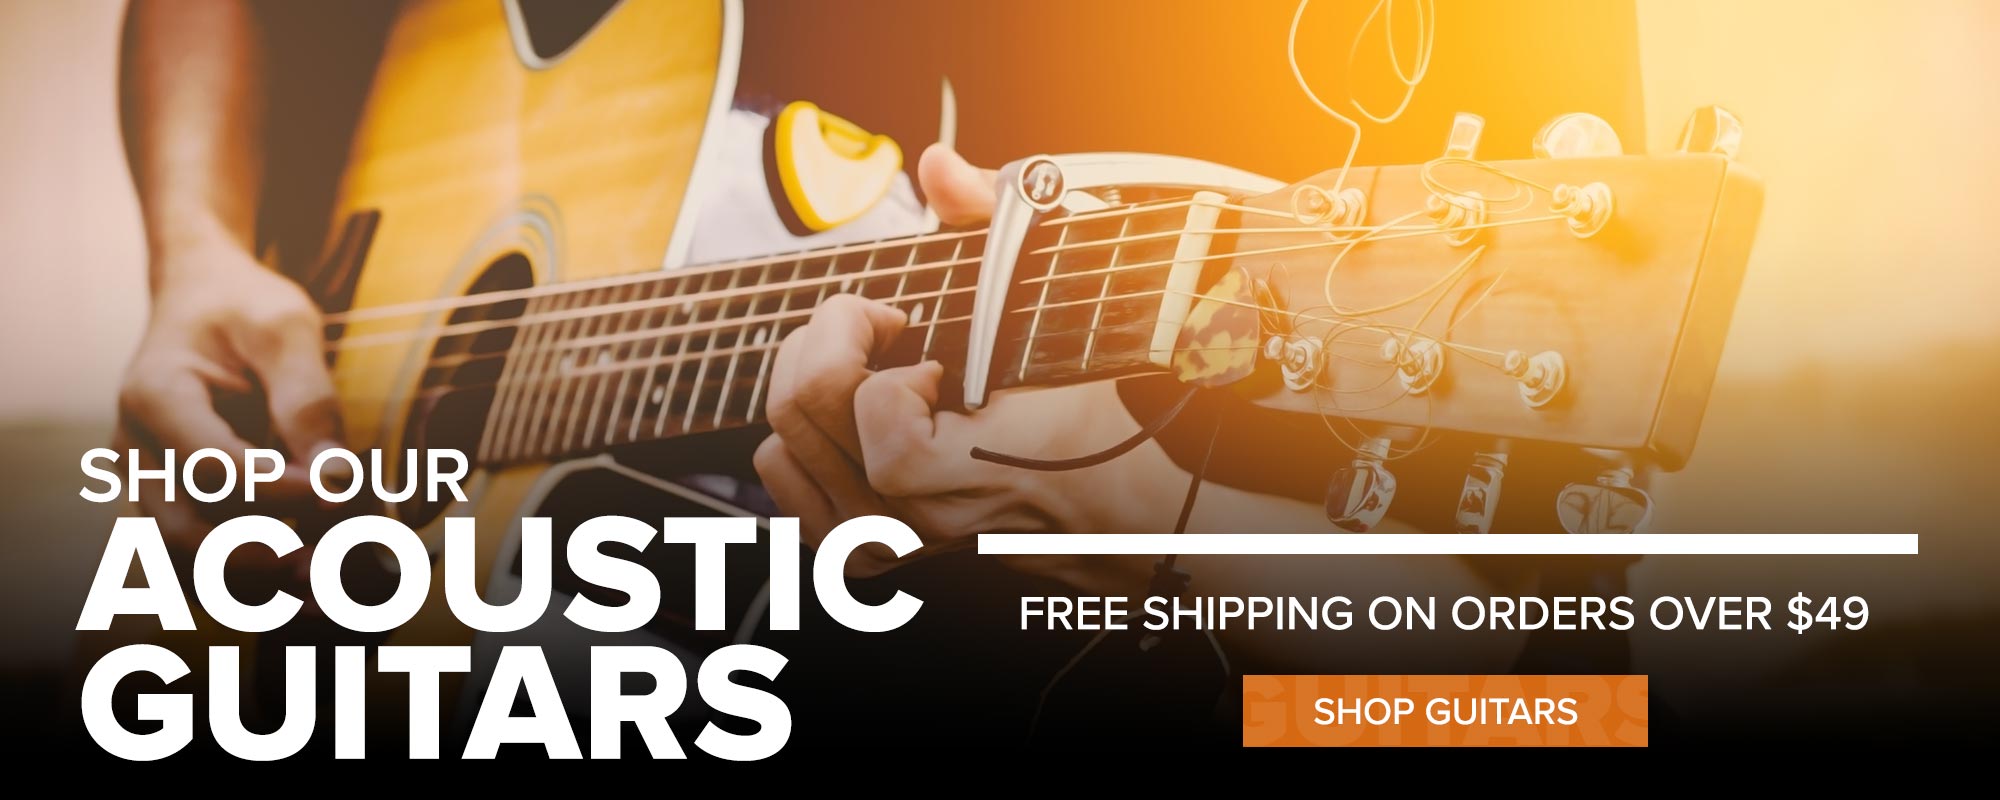 Shop Acoustic Guitars Now